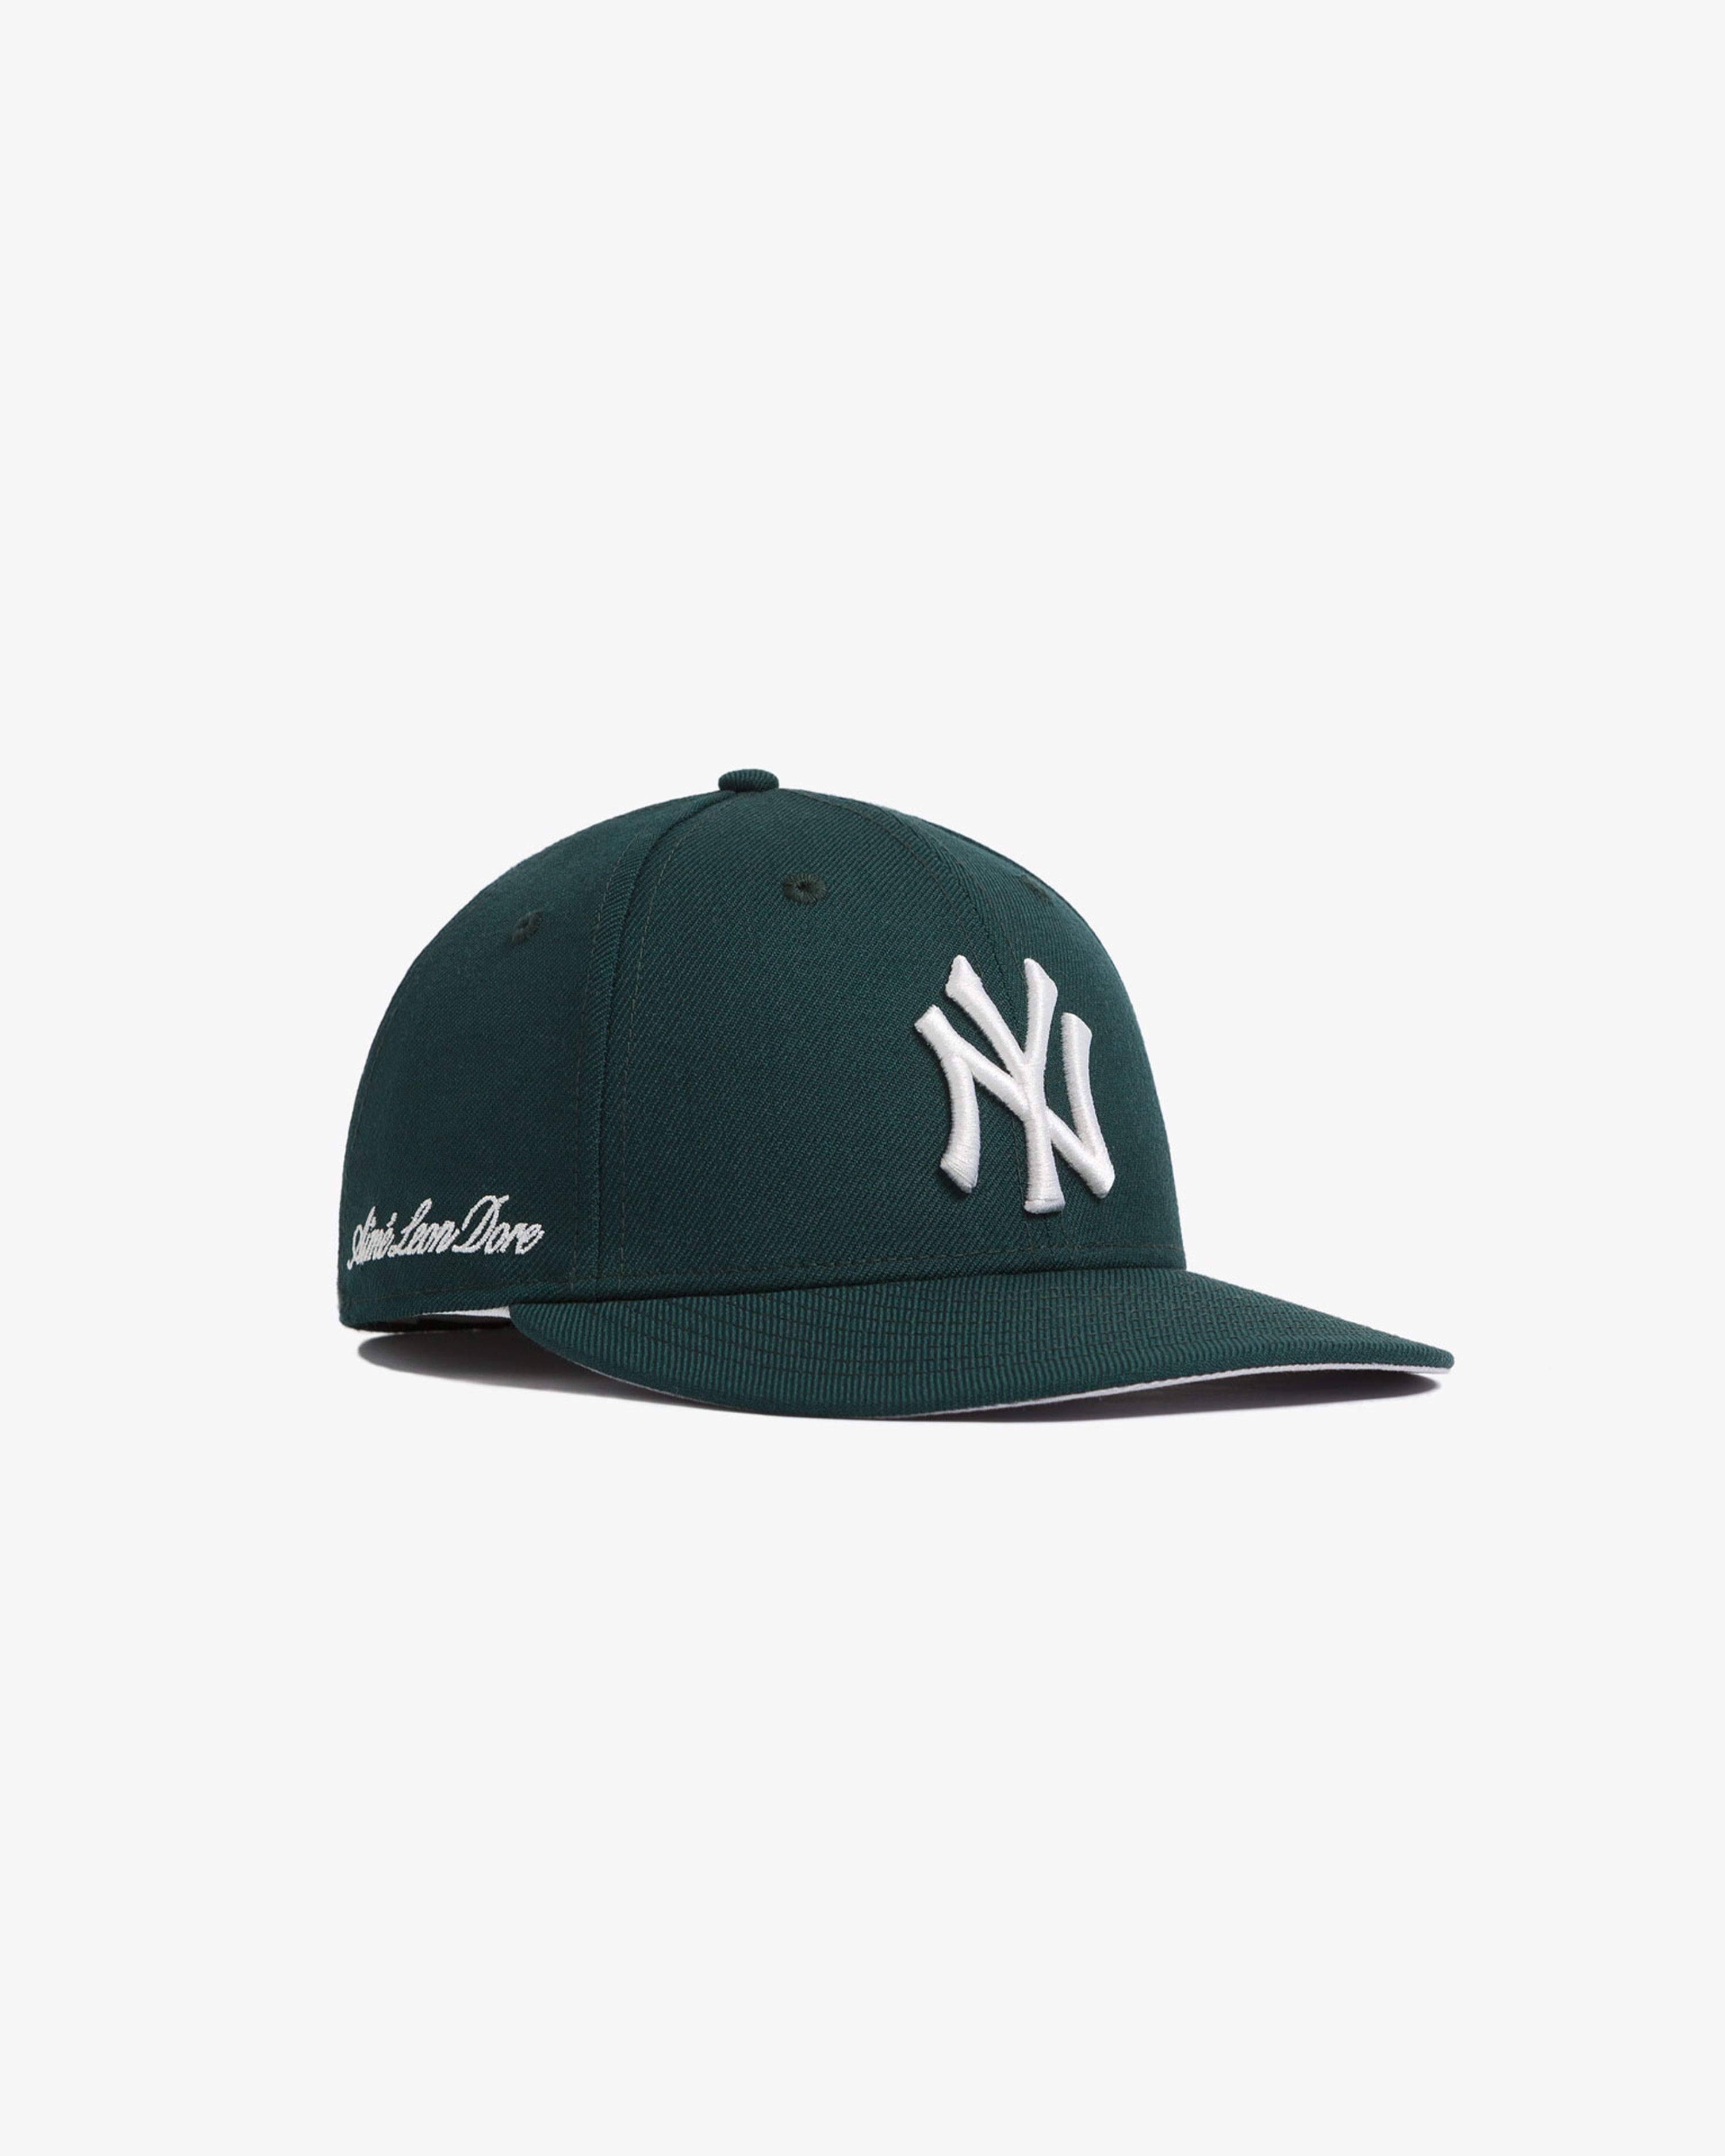 Aime Leon Dore New Era Yankees  Cap